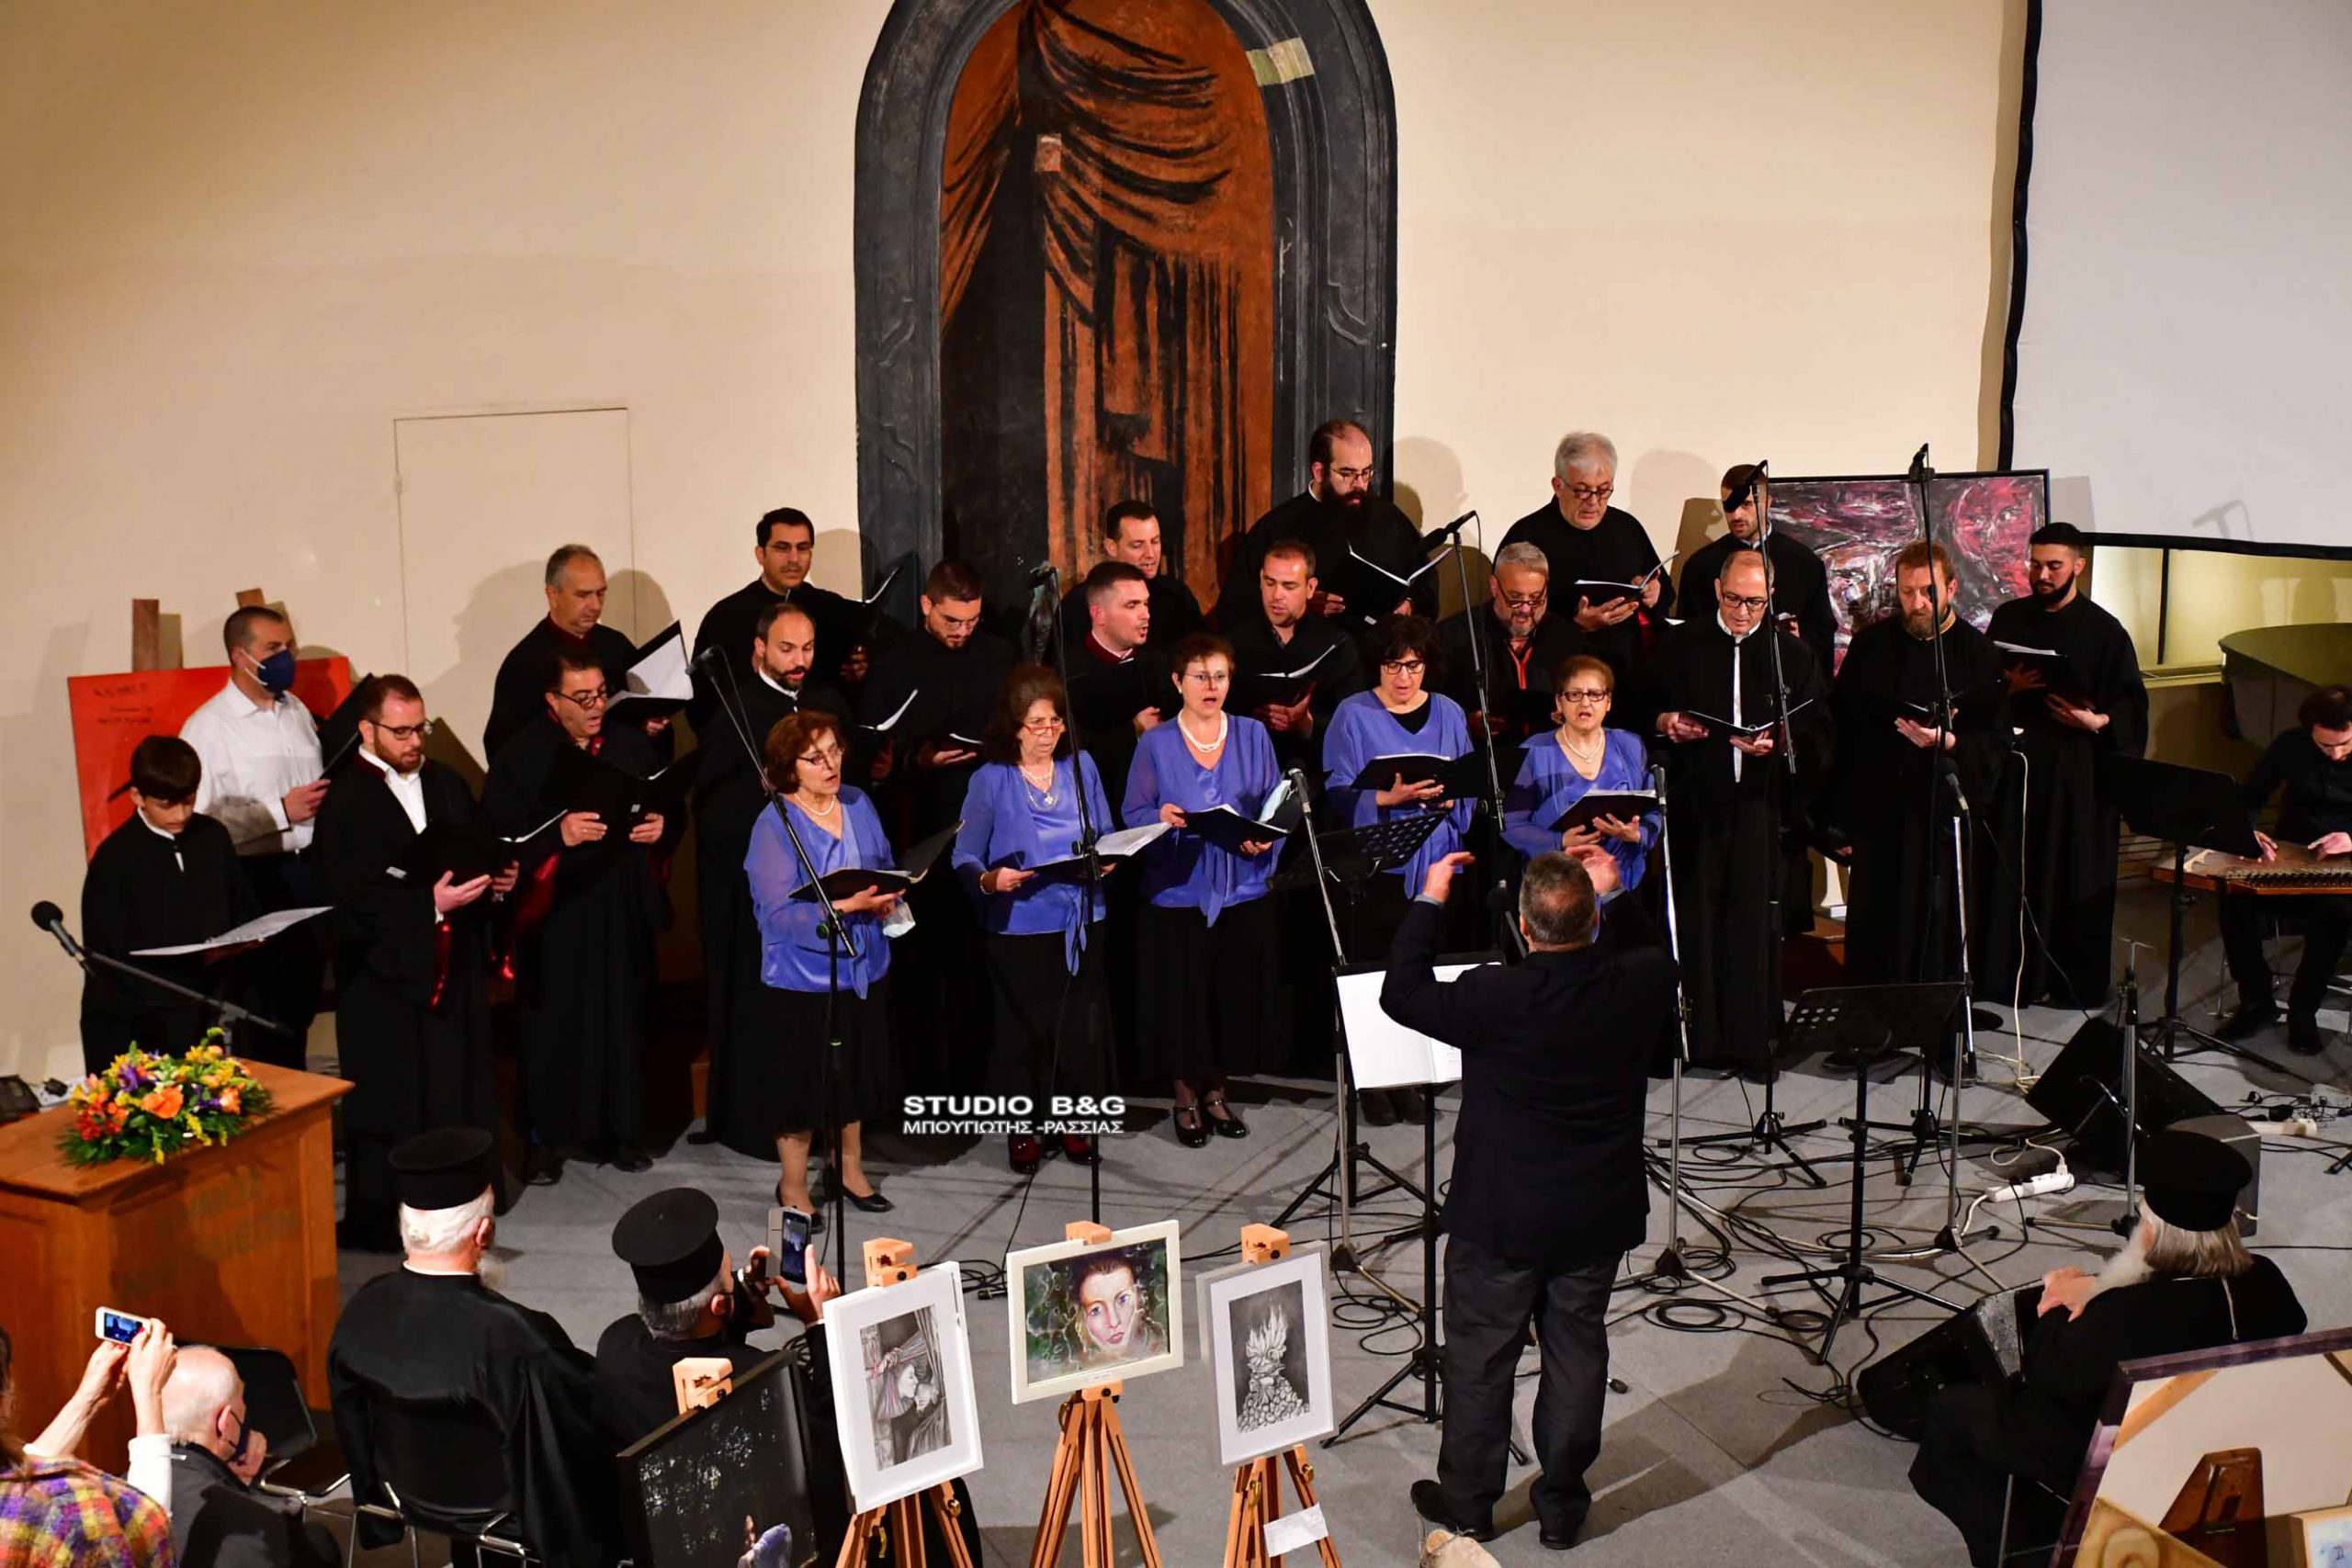 "Ερχόμενος προς το Πάθος": Εκδήλωση με βυζαντινούς ύμνους και παραδοσιακά άσματα στο Ναύπλιο